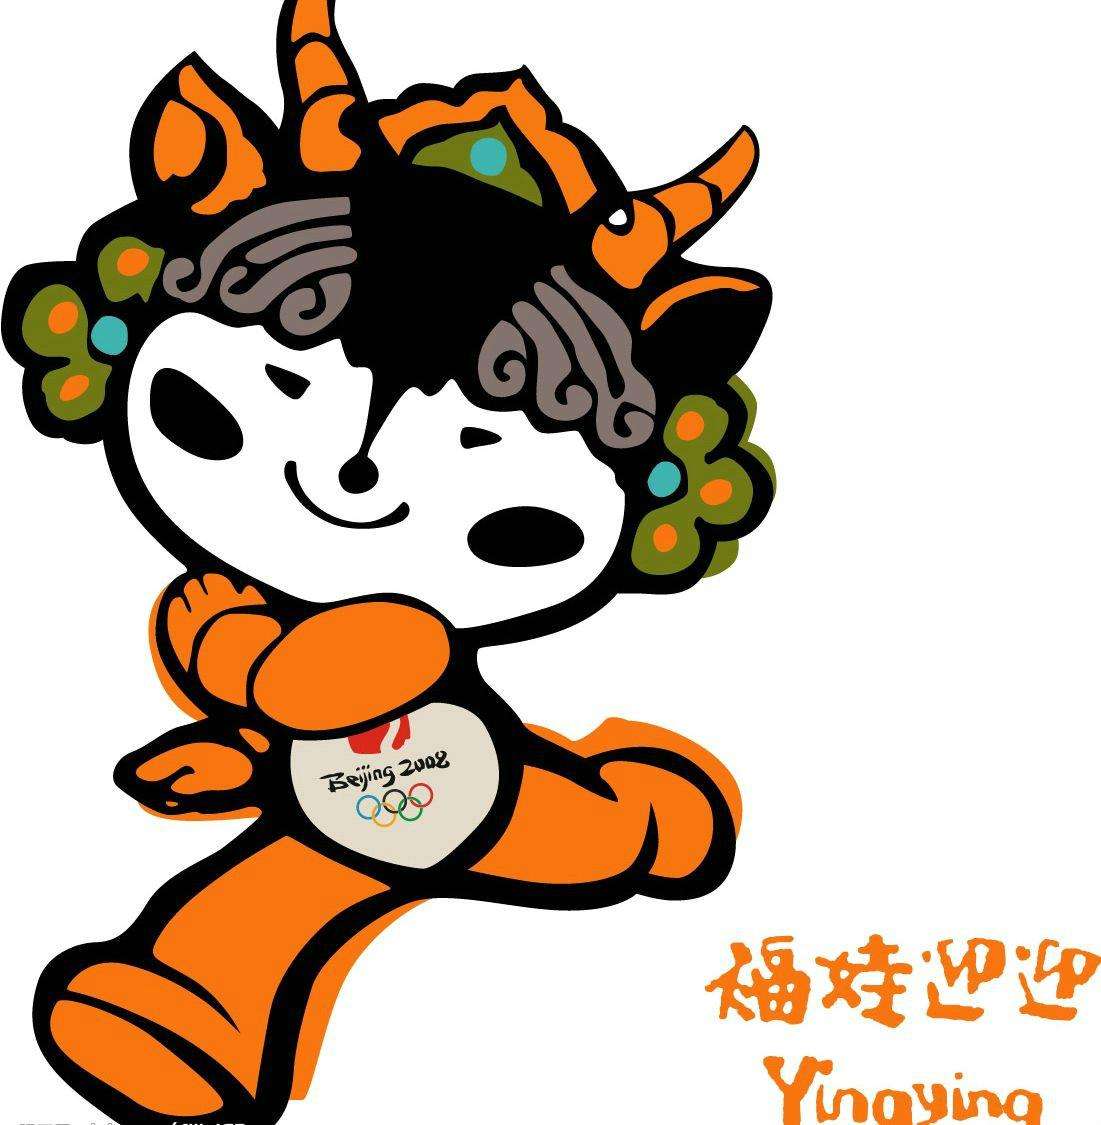 福娃迎迎是2008年北京奥运会的吉祥物,头部纹饰融入了青藏高原和新疆